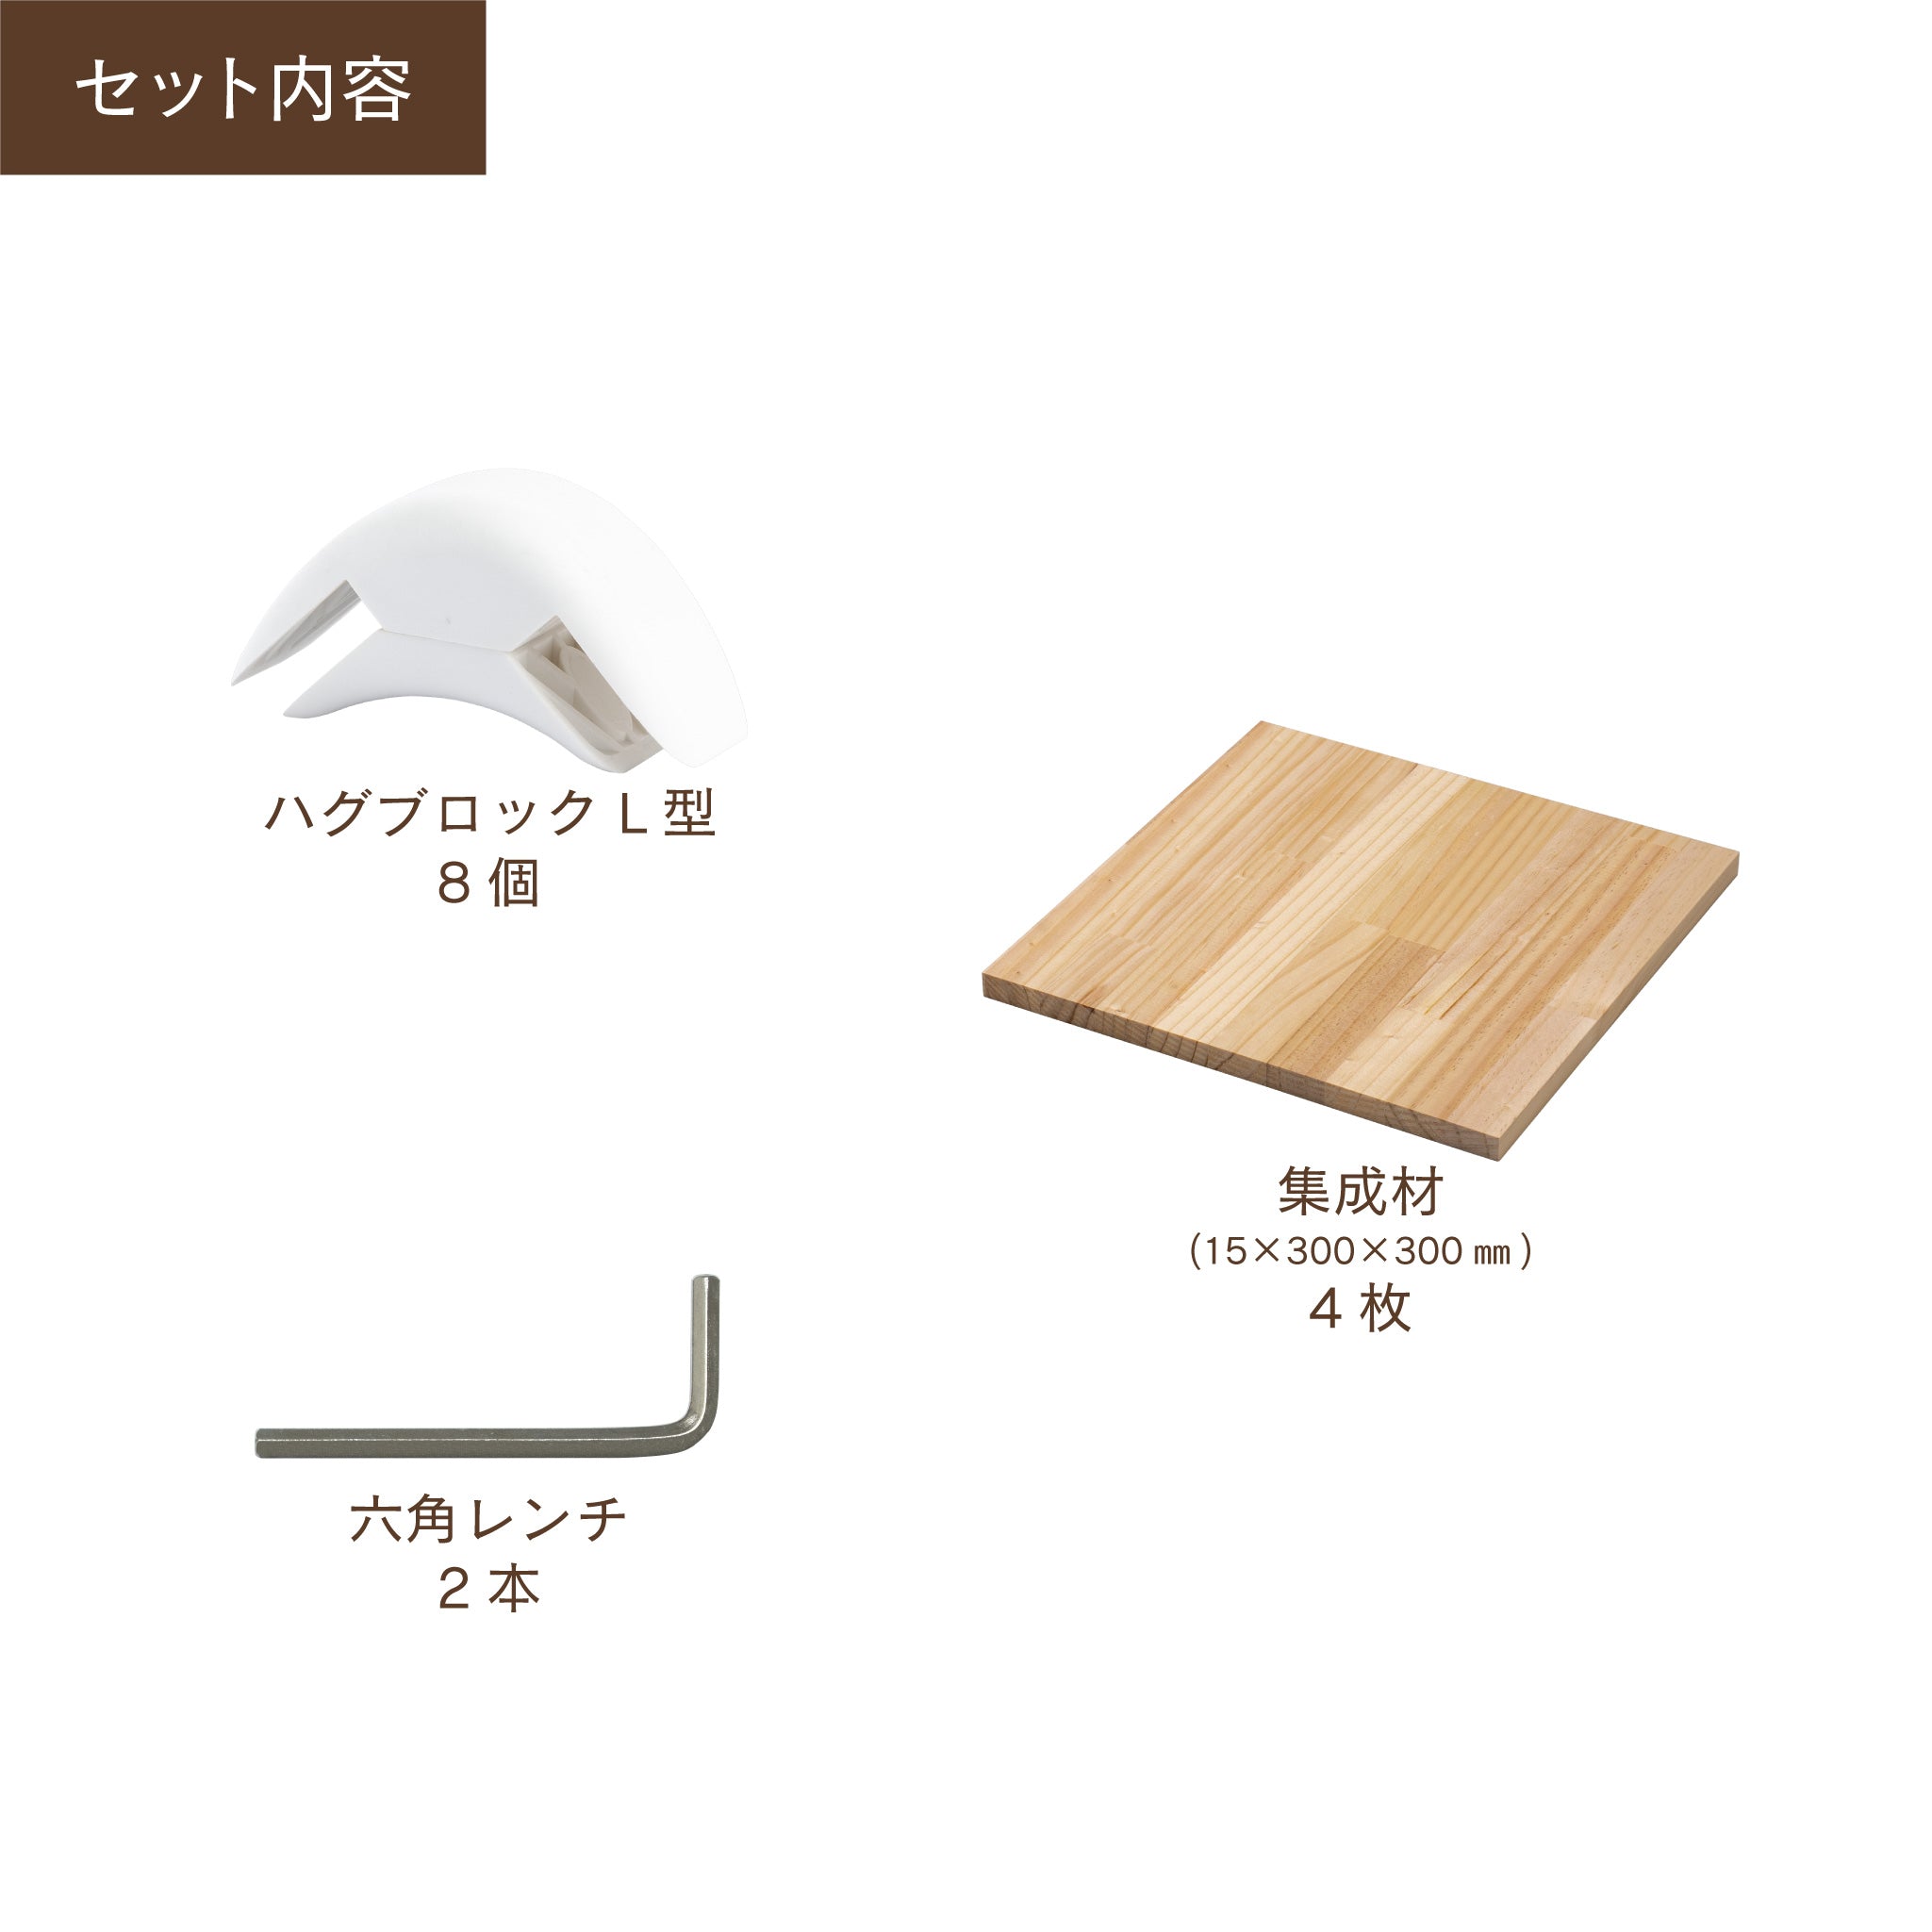 【送料無料】ハグブロック ボックスS 木材セット